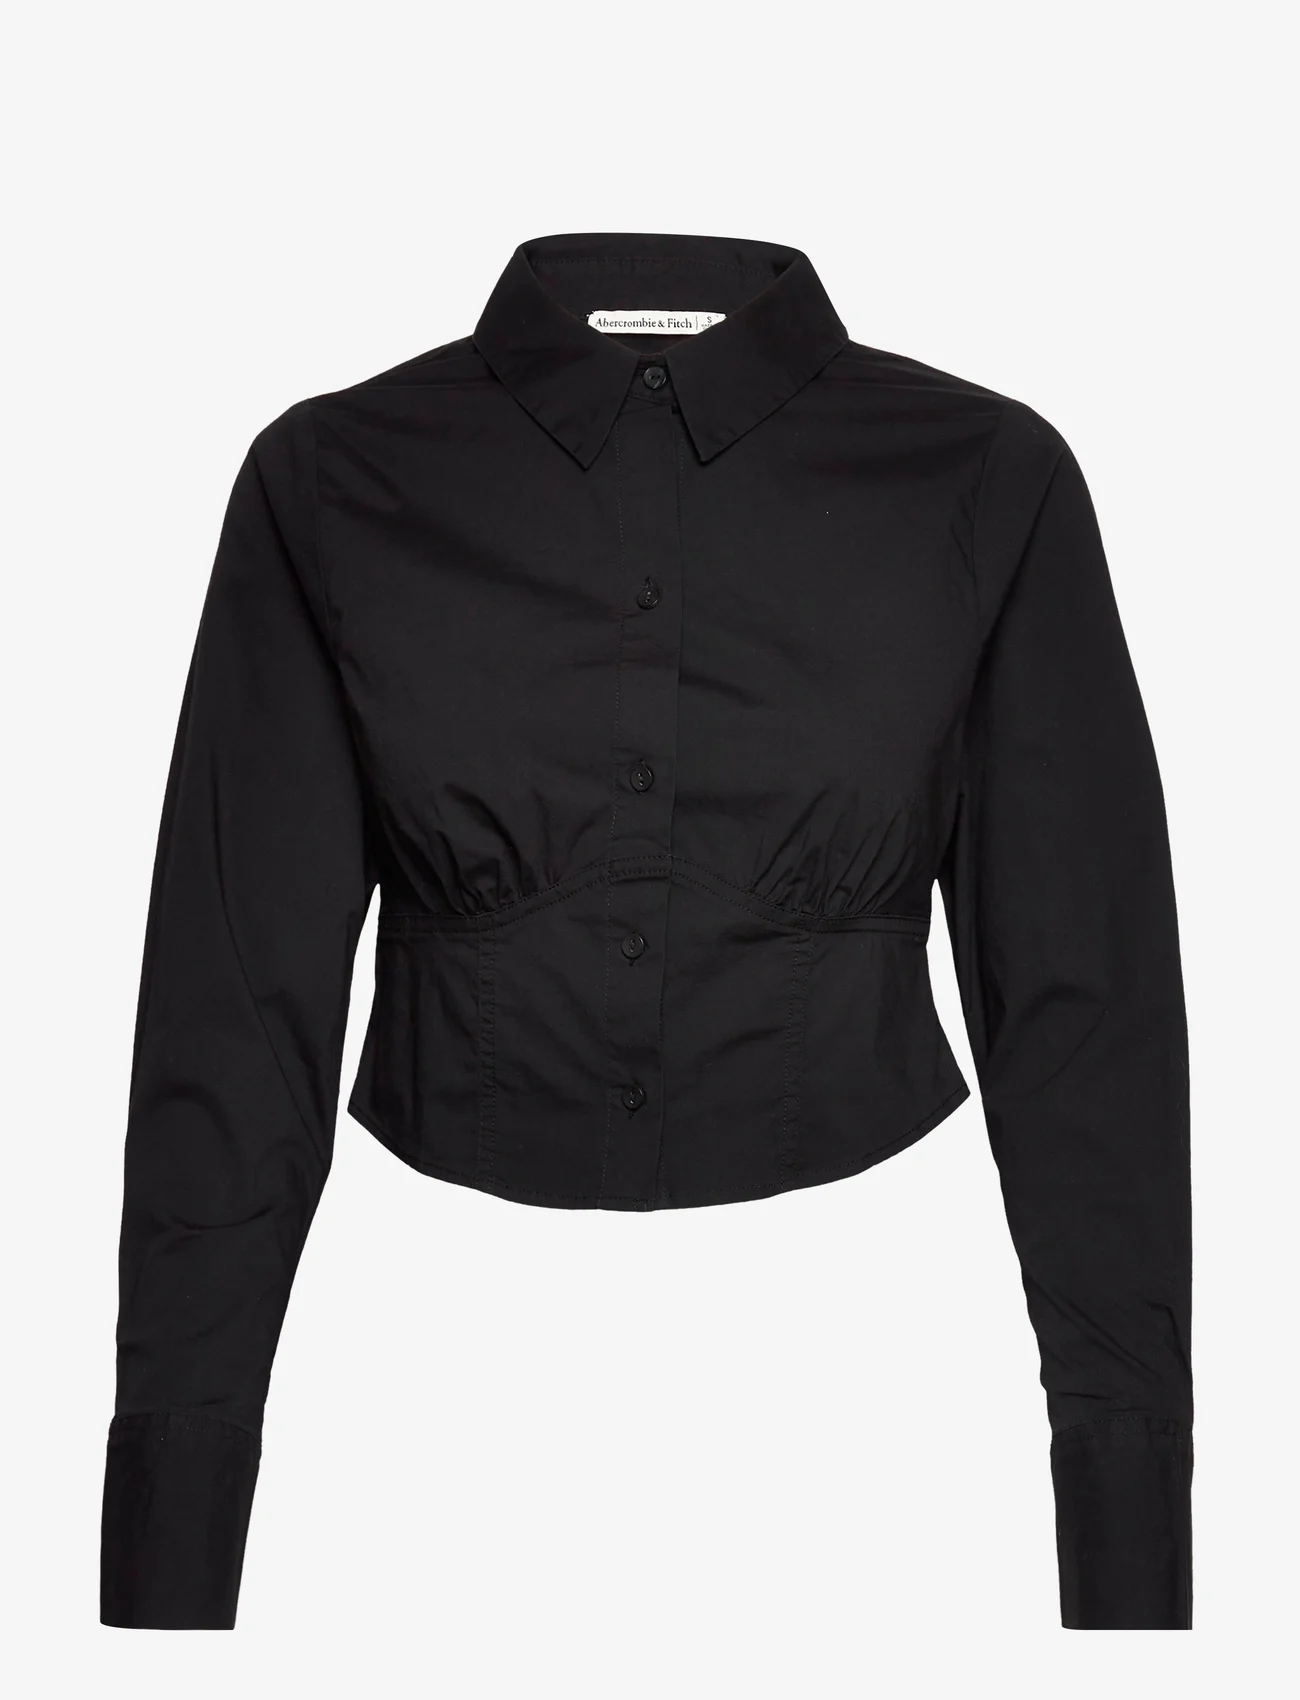 Abercrombie & Fitch - ANF WOMENS WOVENS - koszule z długimi rękawami - black - 0